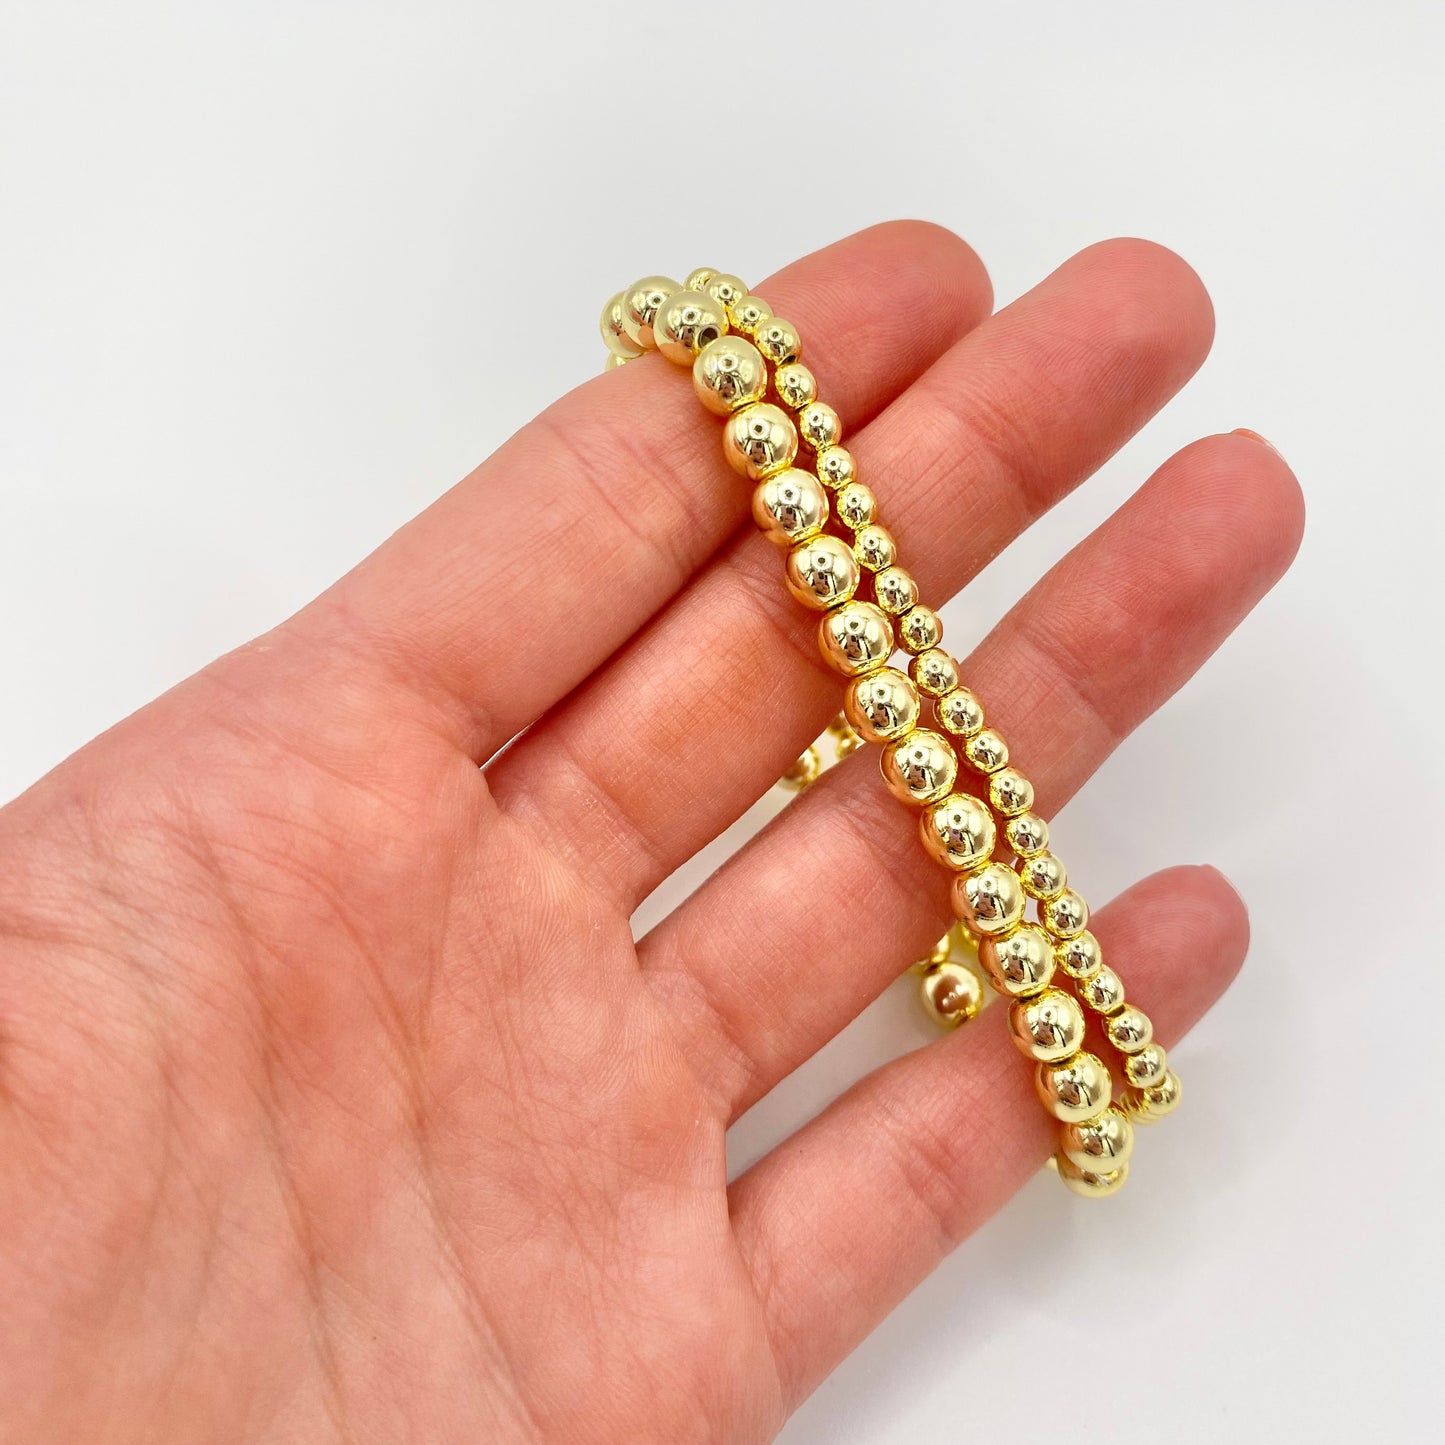 Beaded 14K Gold Hematite Bracelet